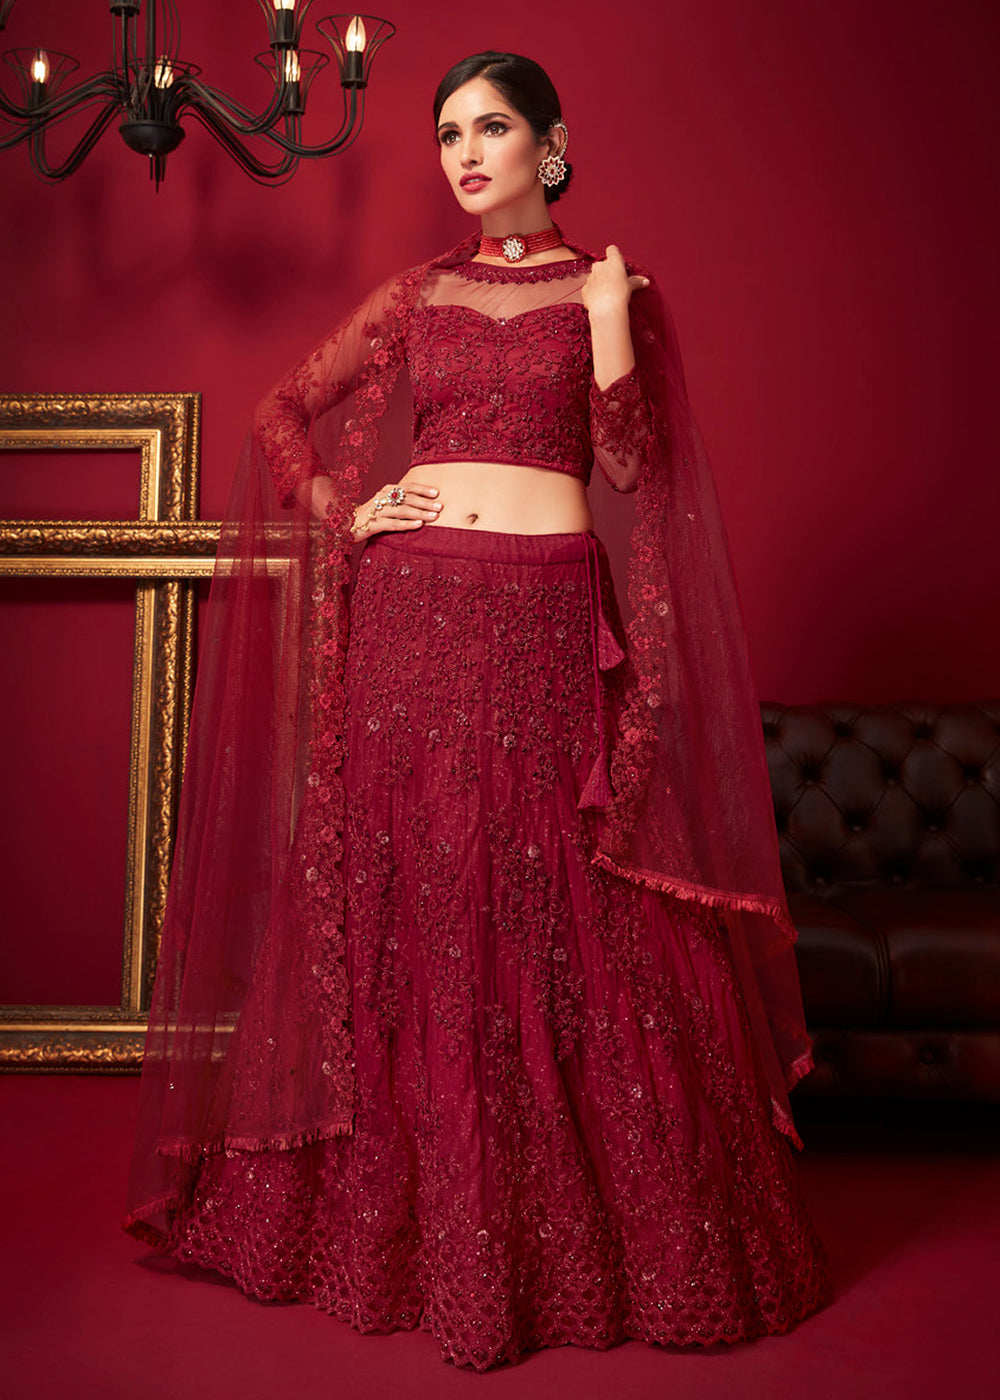 Buy Now Bridal Red Resham & Stone Embroidered Wedding Lehenga Choli Online in USA, UK, Canada & Worldwide at Empress Clothing. 